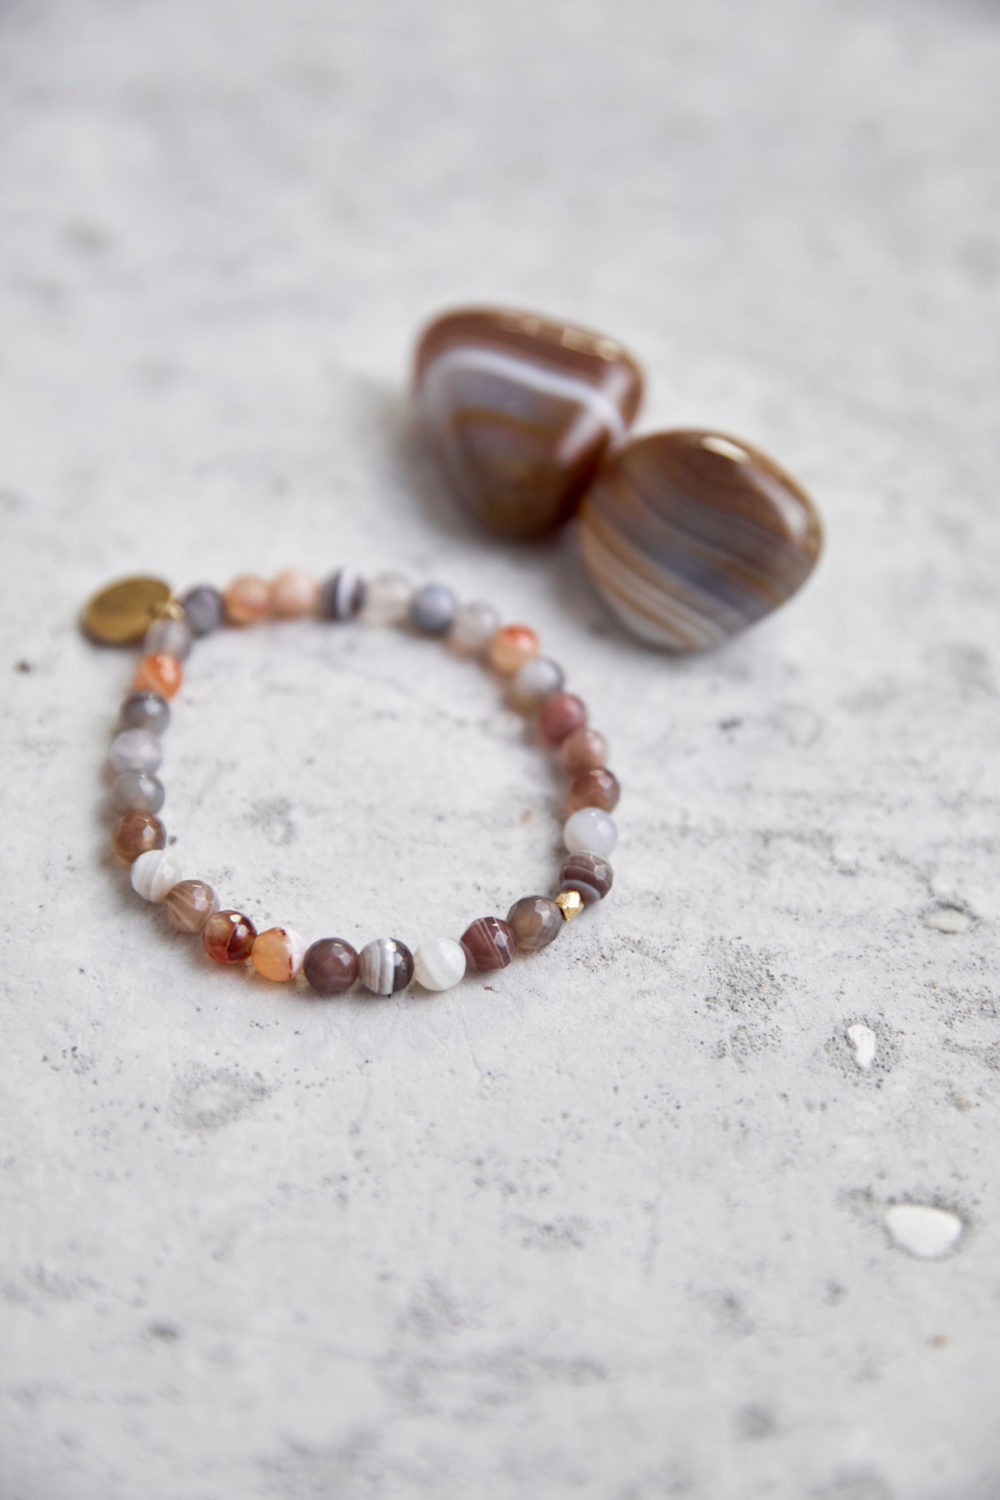 BALANCE Mala Armband aus Achat Steinen mit goldenem Plättchen und Perle und Achat Steine.